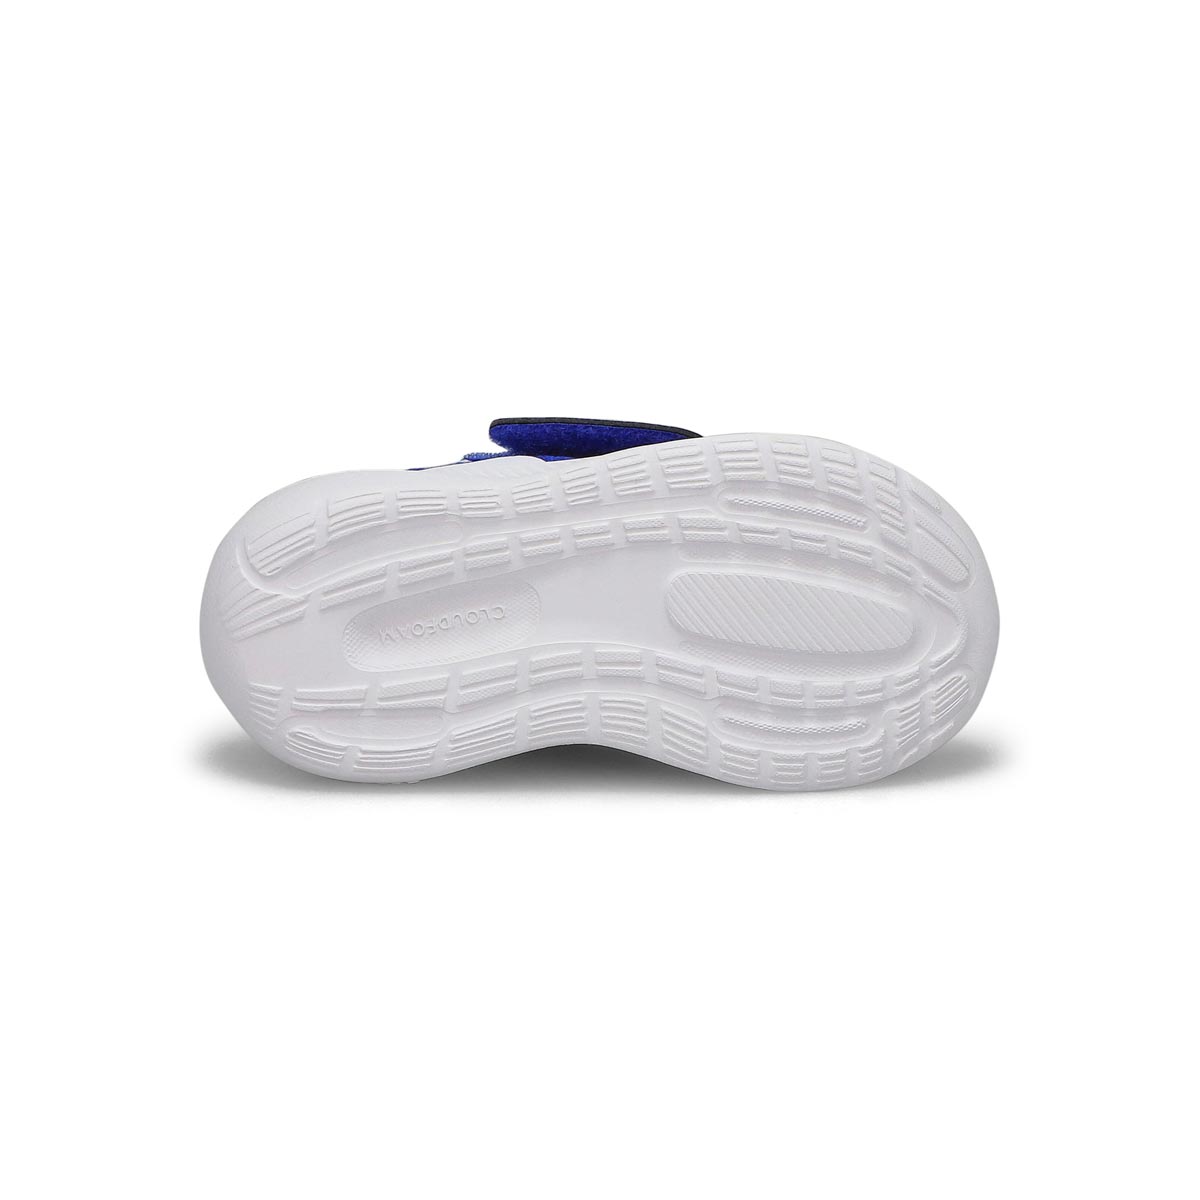 Infants' RunFalcon 3.0 AC Sneaker - Blue/White